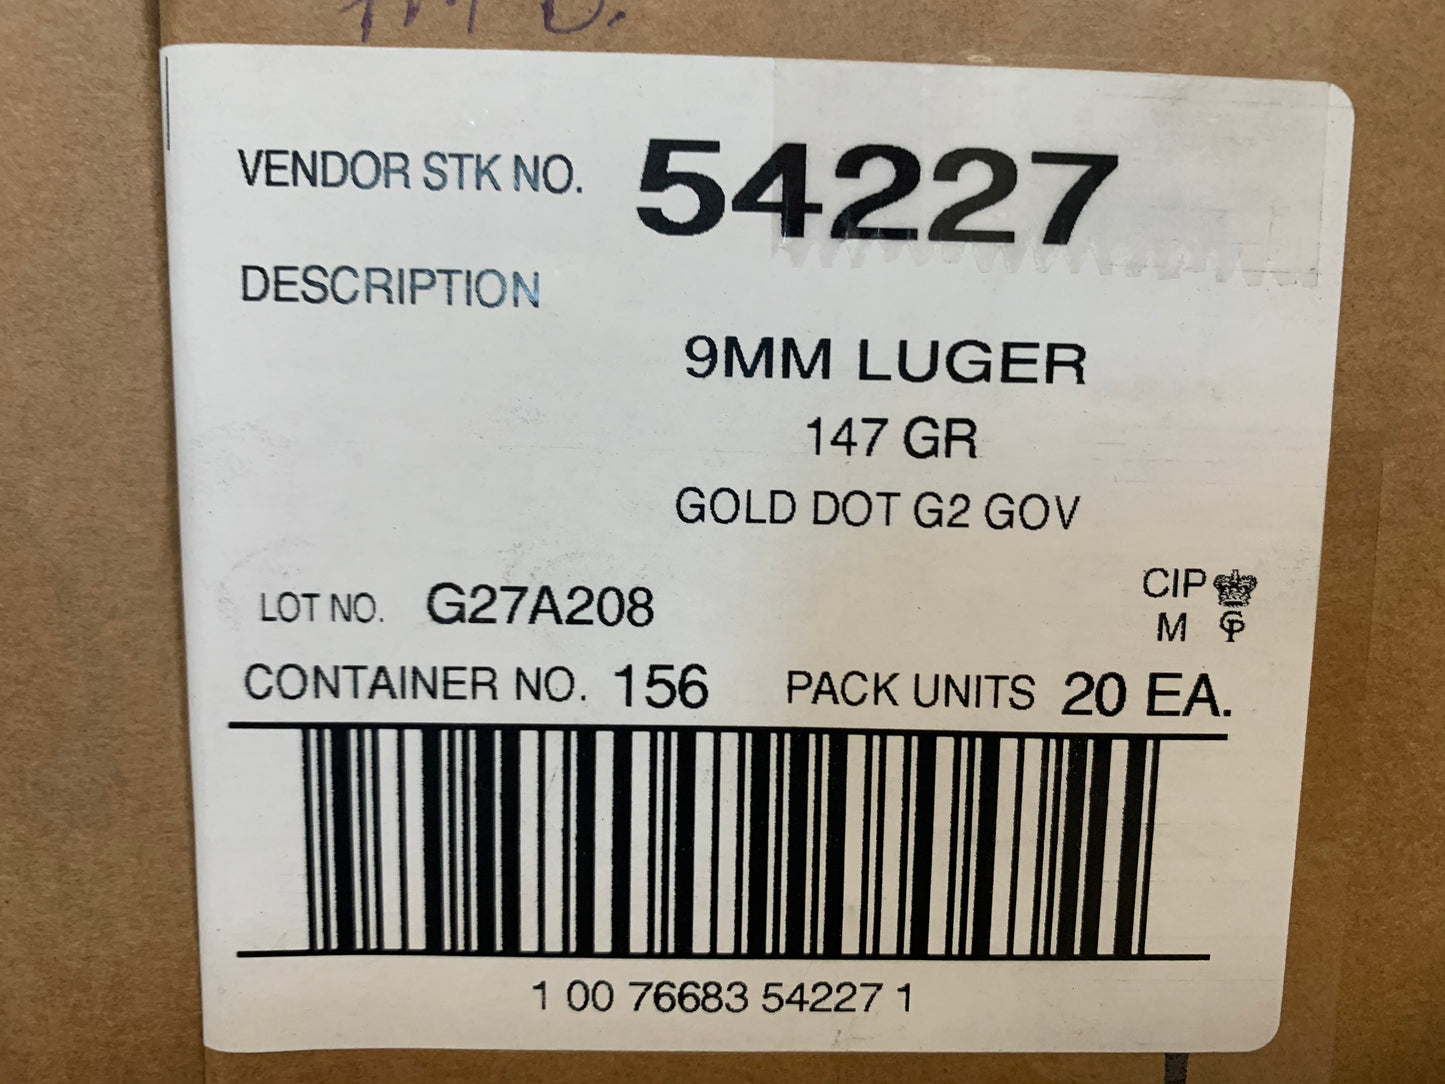 9MM 147GR SPEER Gold Dot G2 (54227)